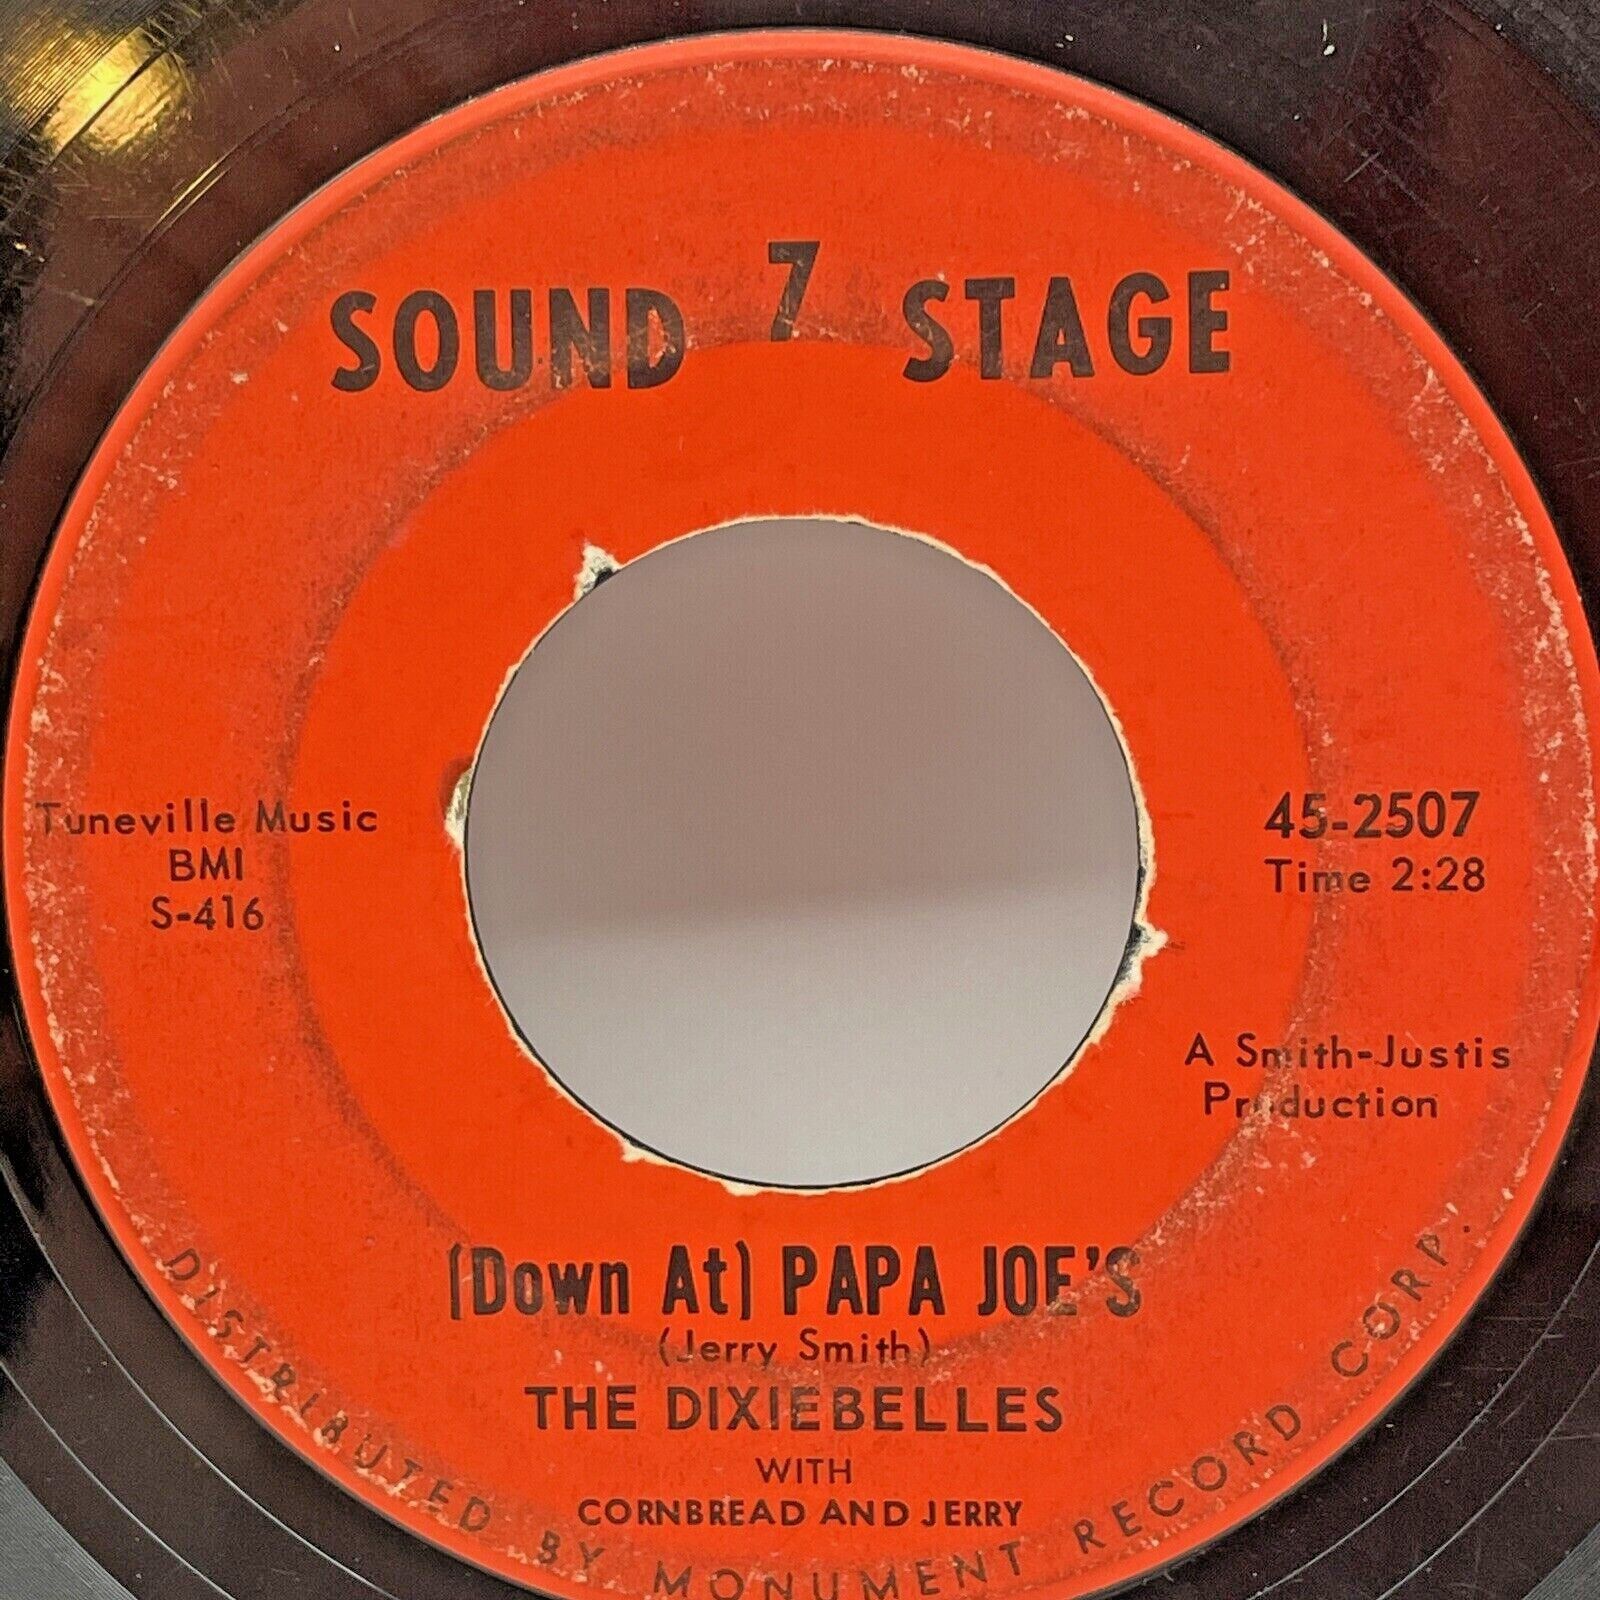 The Dixiebelles- Down at Papa Joe's Rock Rock Rock, Sound 7 Stage 45-2507 BMI